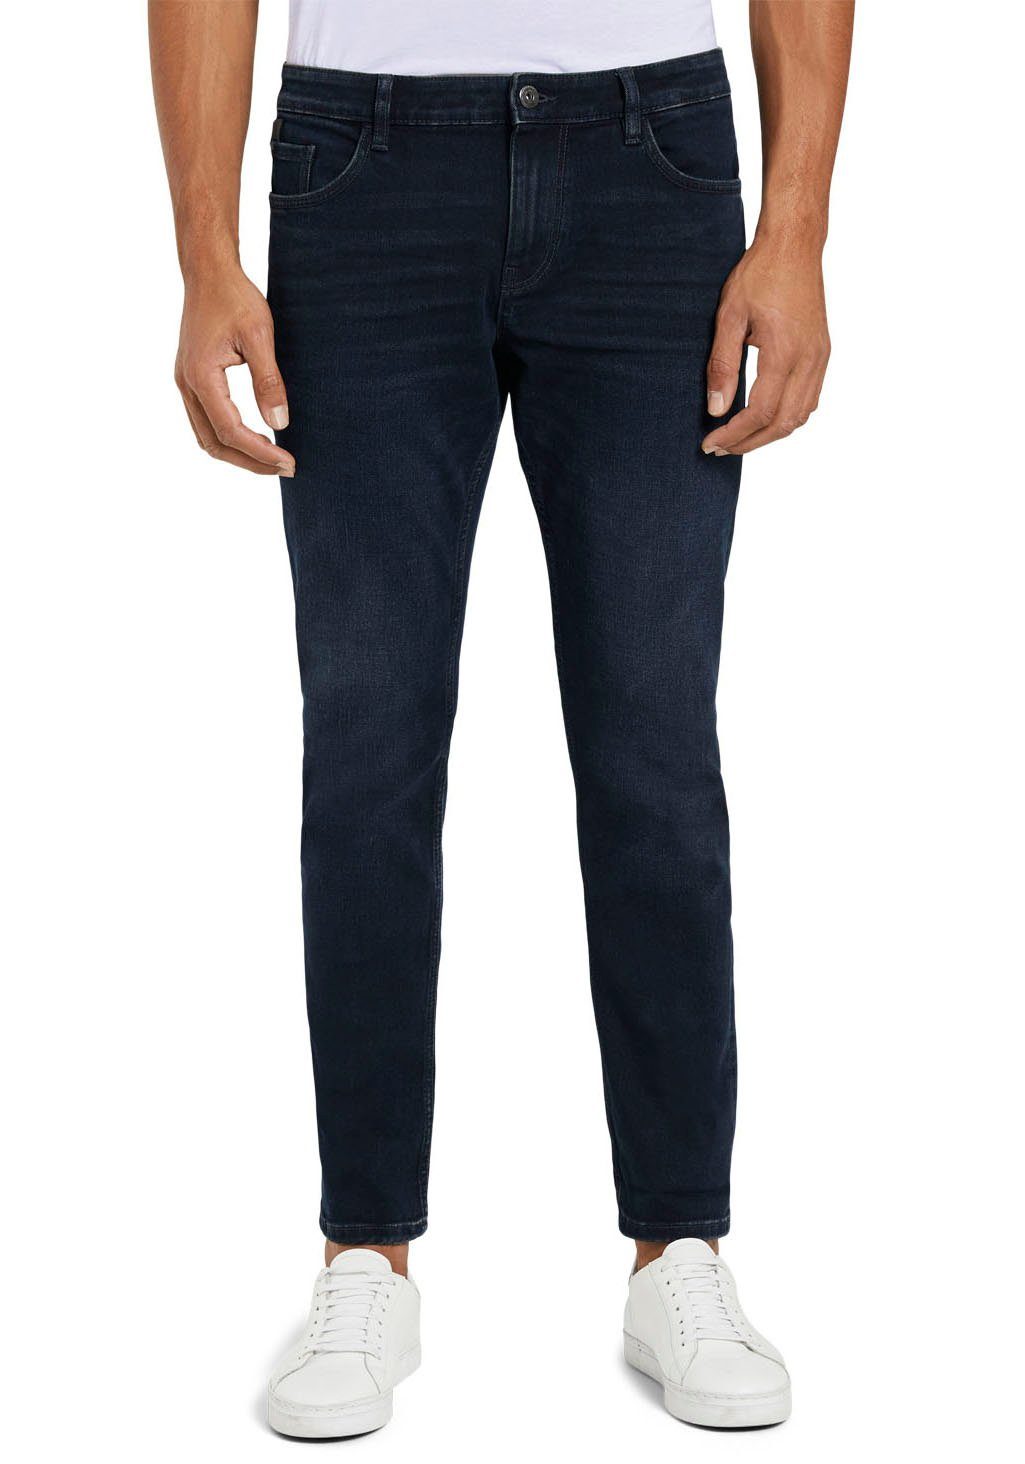 Reißverschluss dark black blue Josh mit TAILOR stone 5-Pocket-Jeans TOM